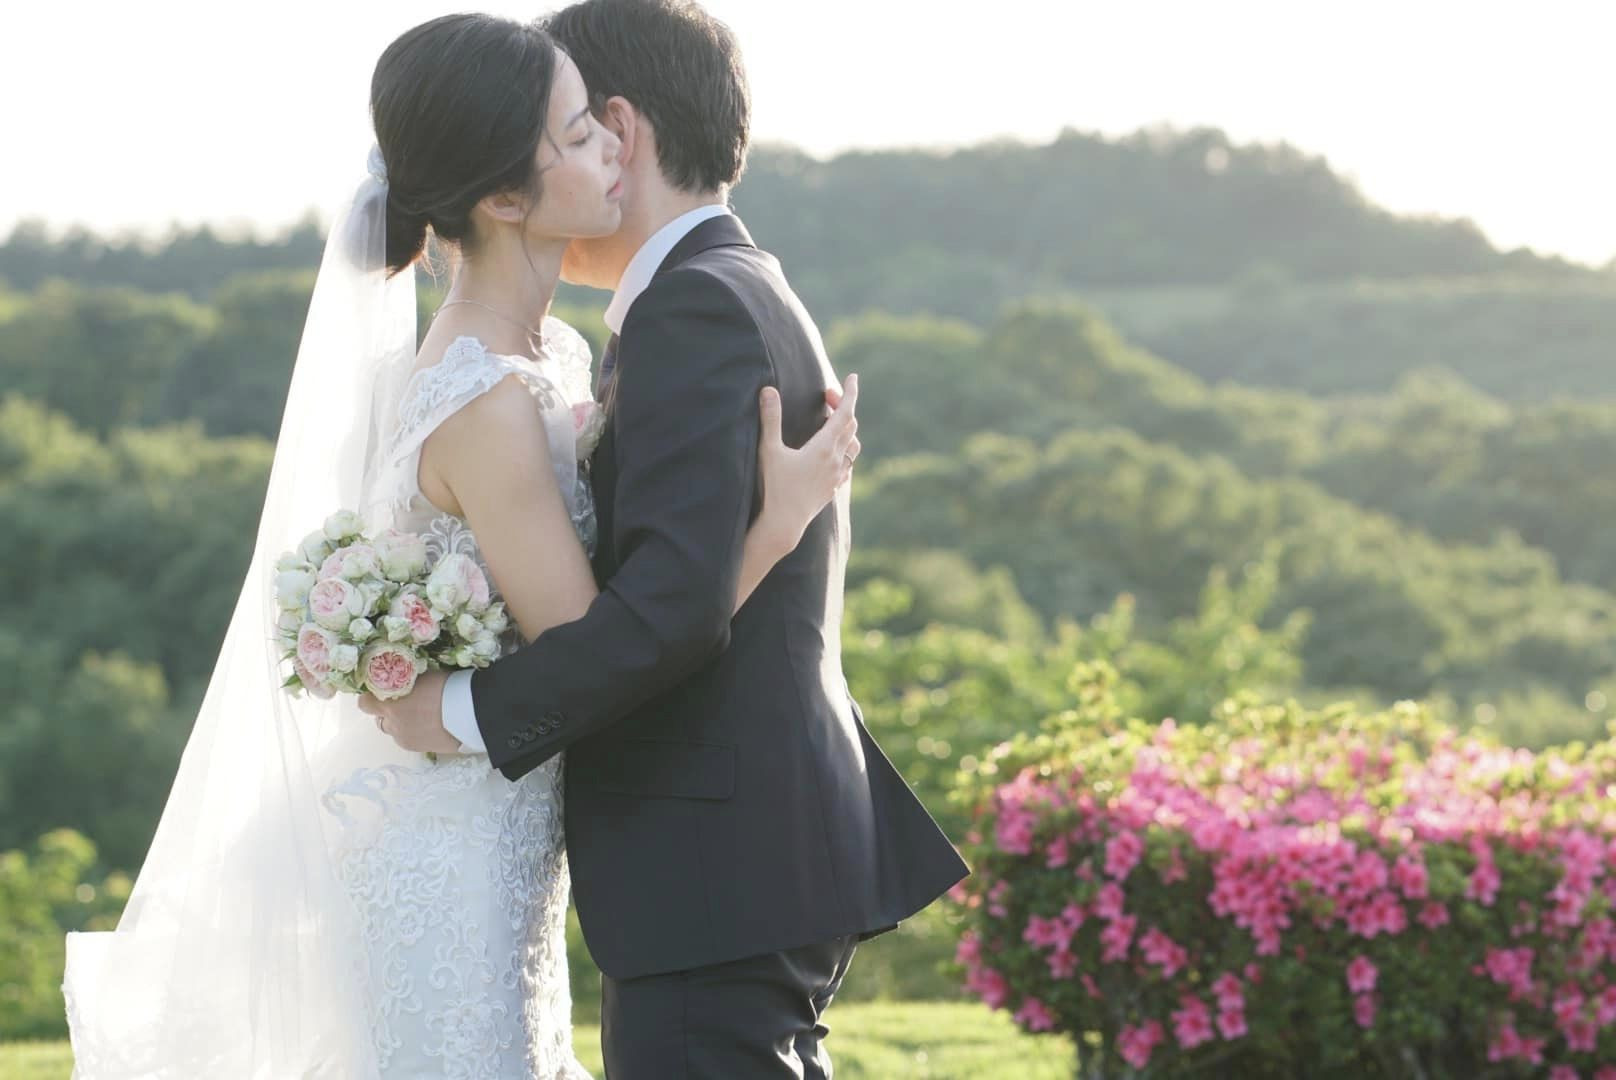 Chồng Nhật ngại tạo dáng, vợ Việt chờ 5 năm chụp ảnh cưới tuyệt đẹp 0 đồng - Ảnh 7.